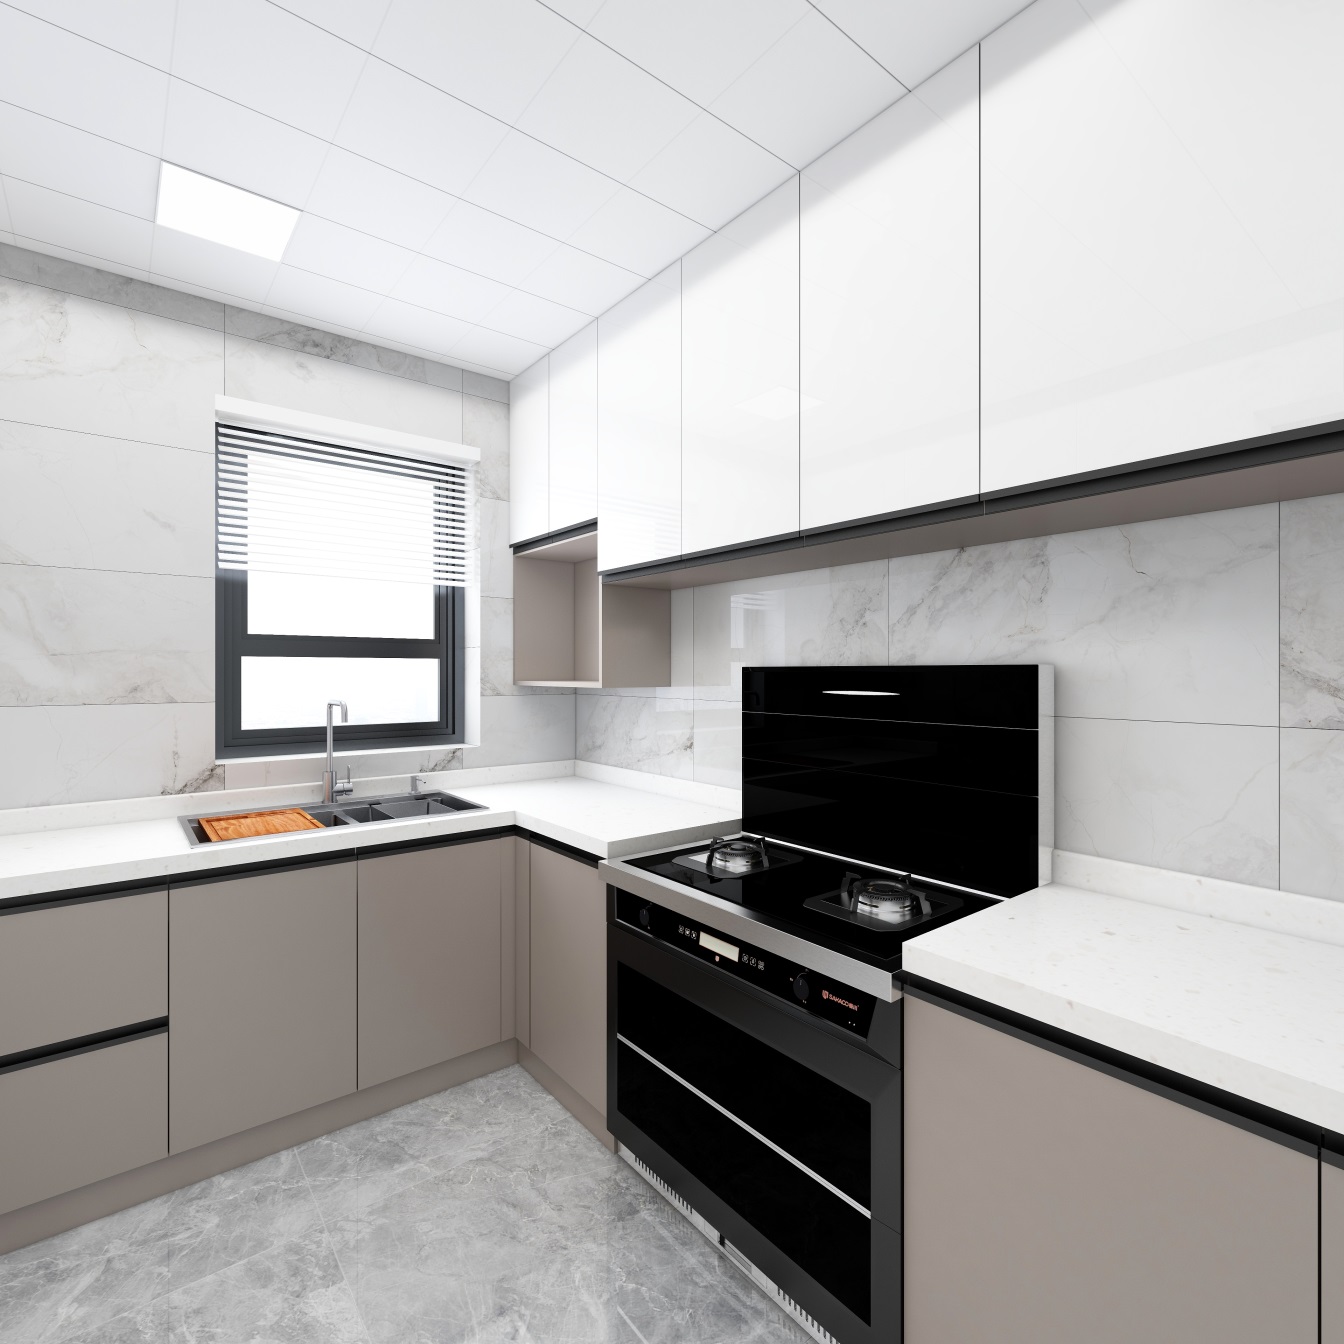 厨房选用纯净的白色系为主题，搭配米色底柜，冲撞出现代生活的质感。